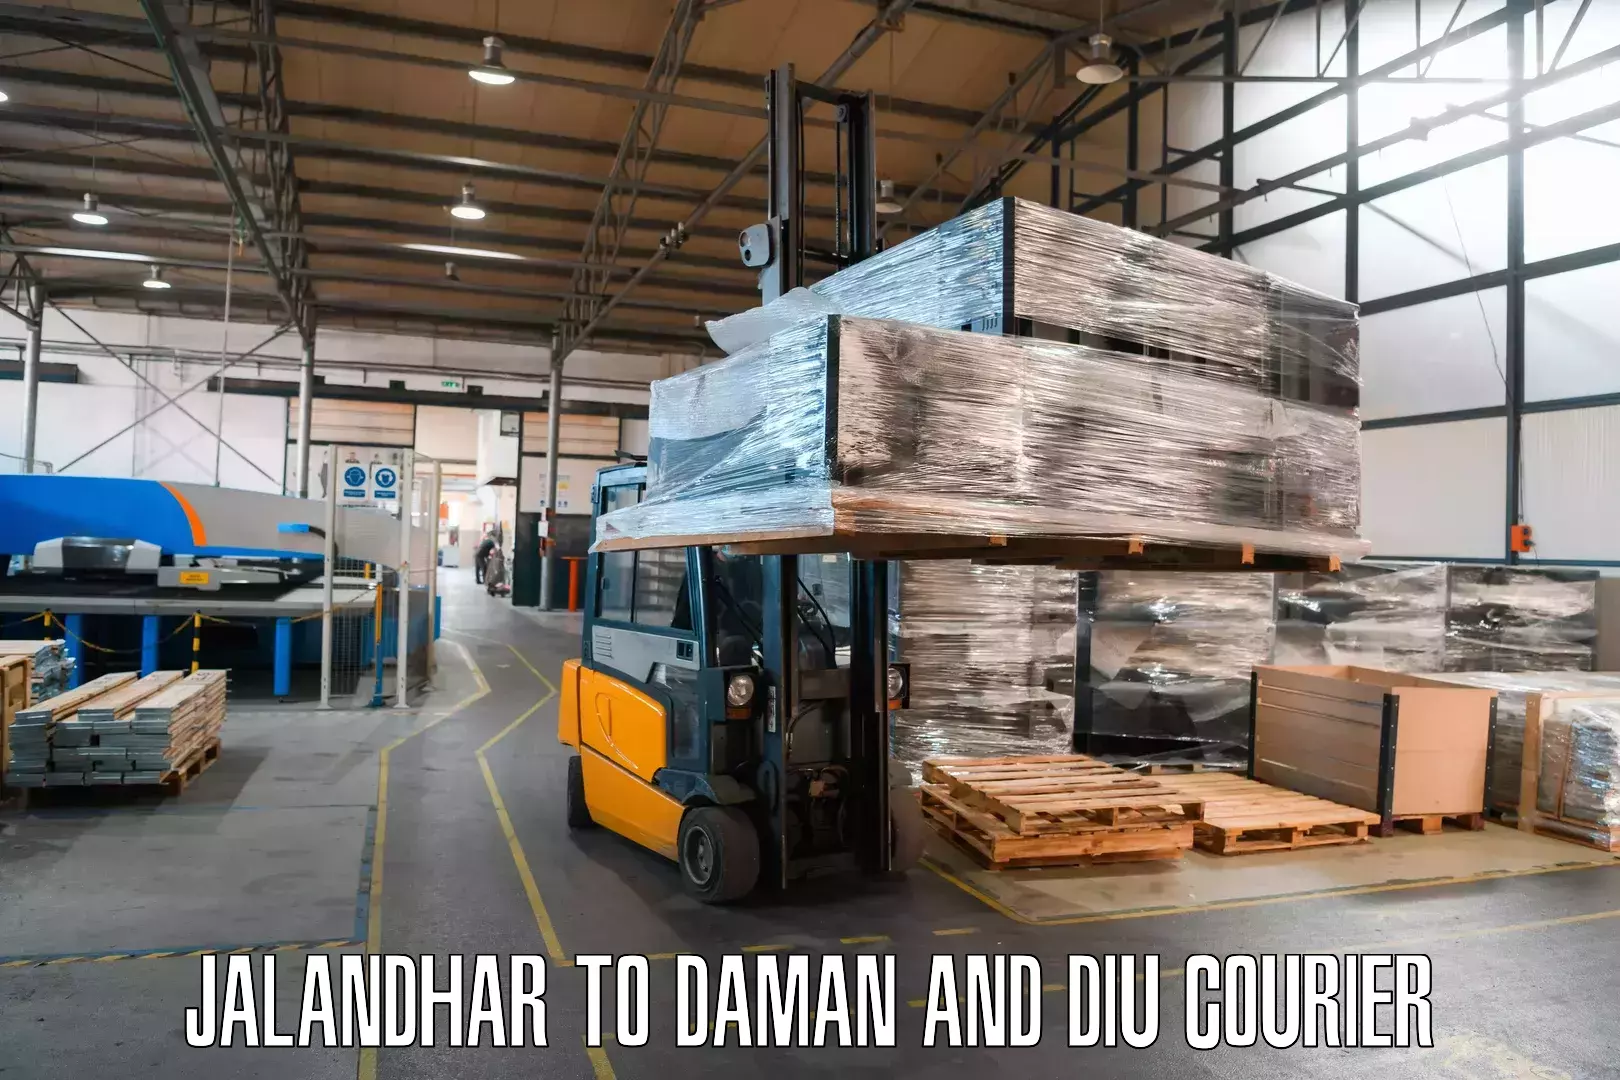 Global parcel delivery Jalandhar to Diu